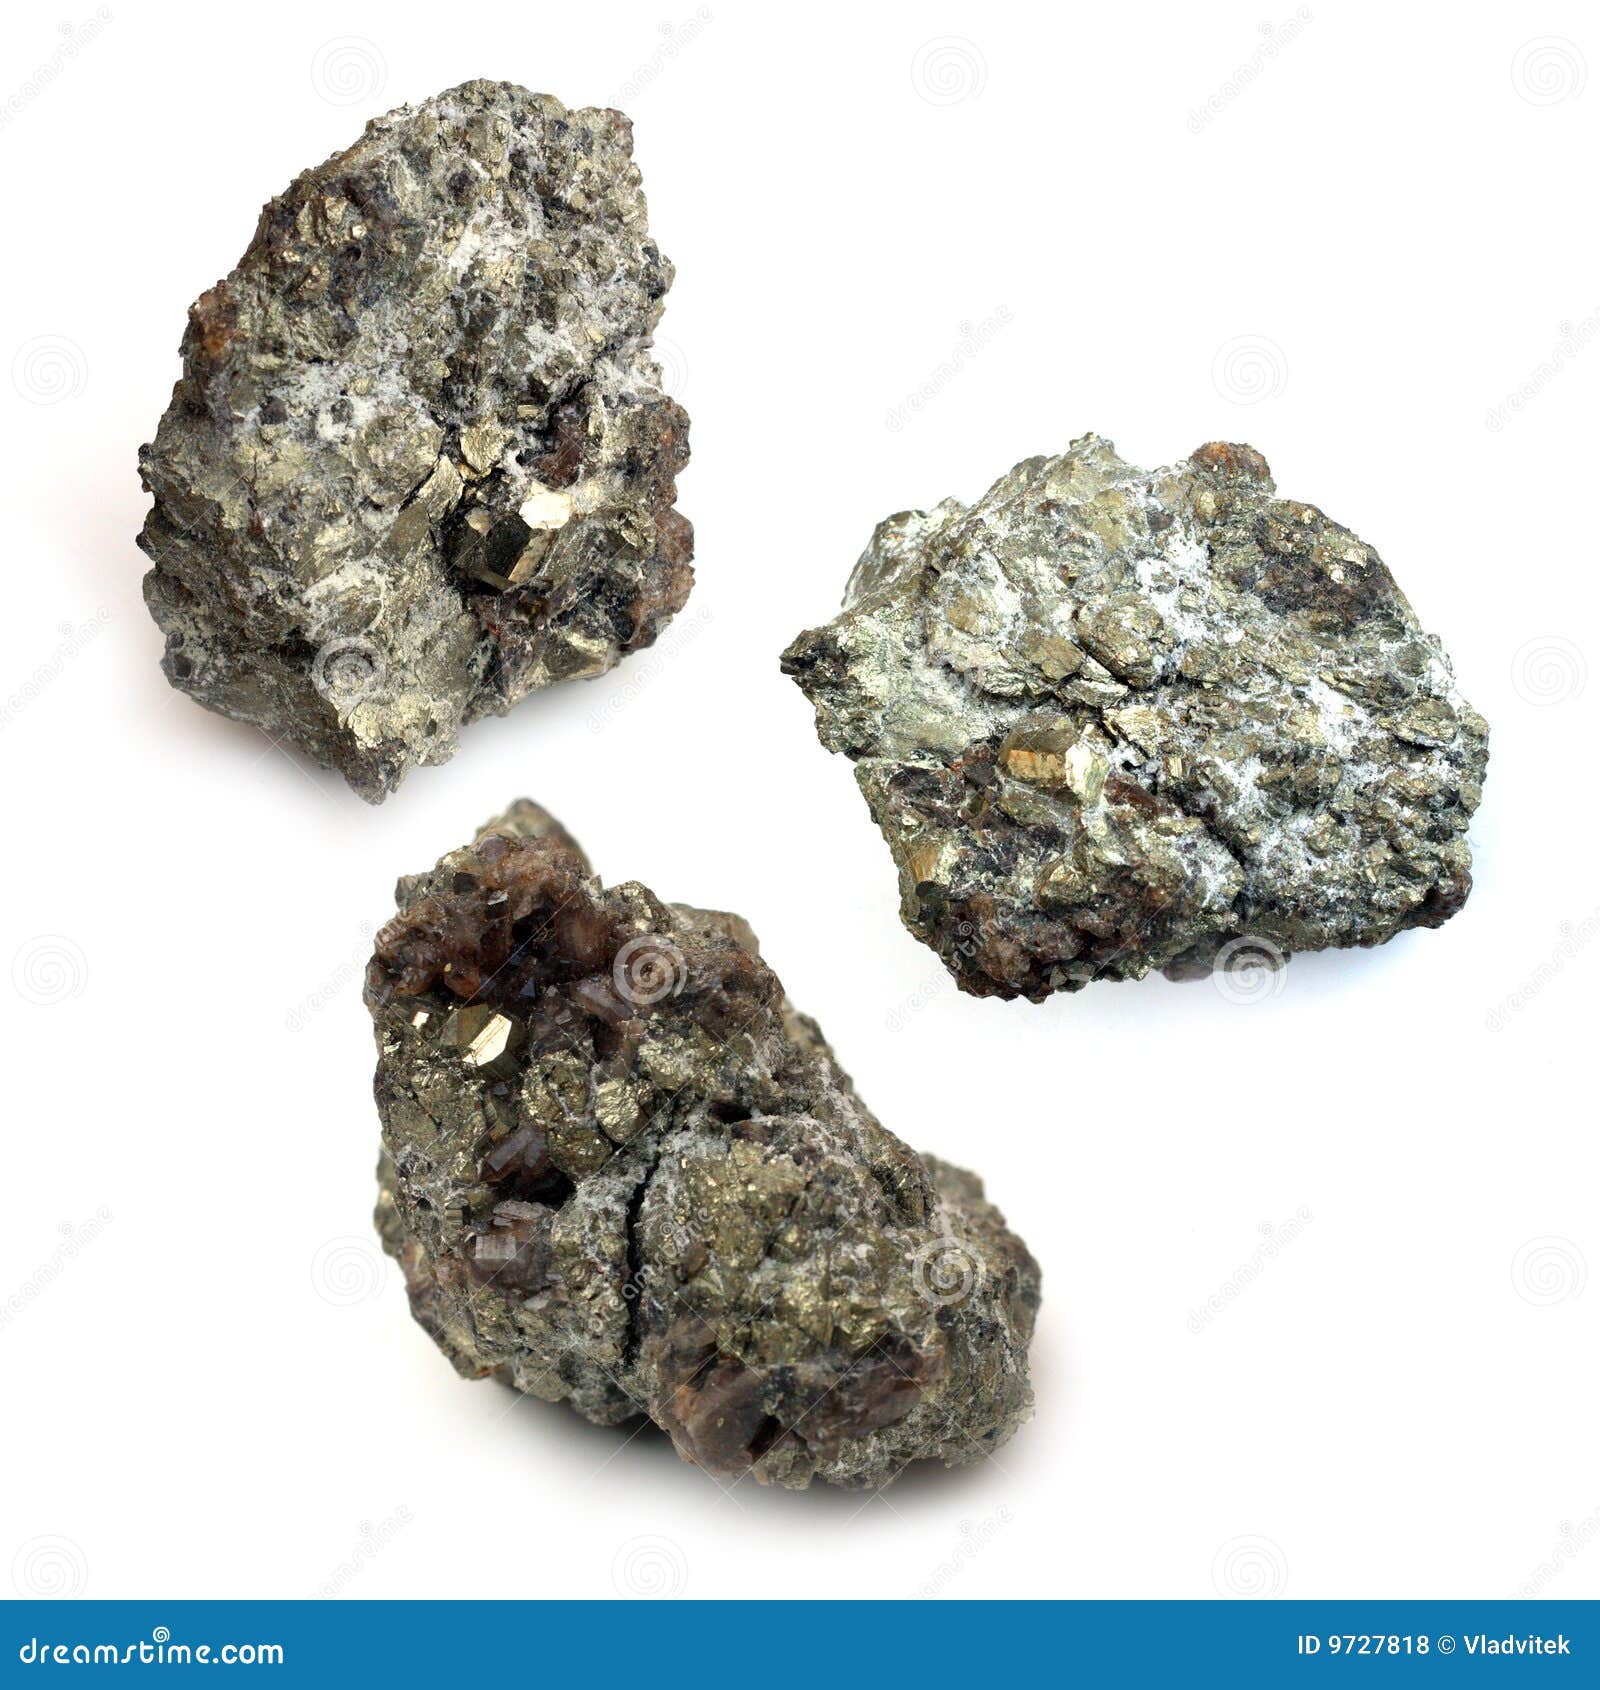 uranium ore